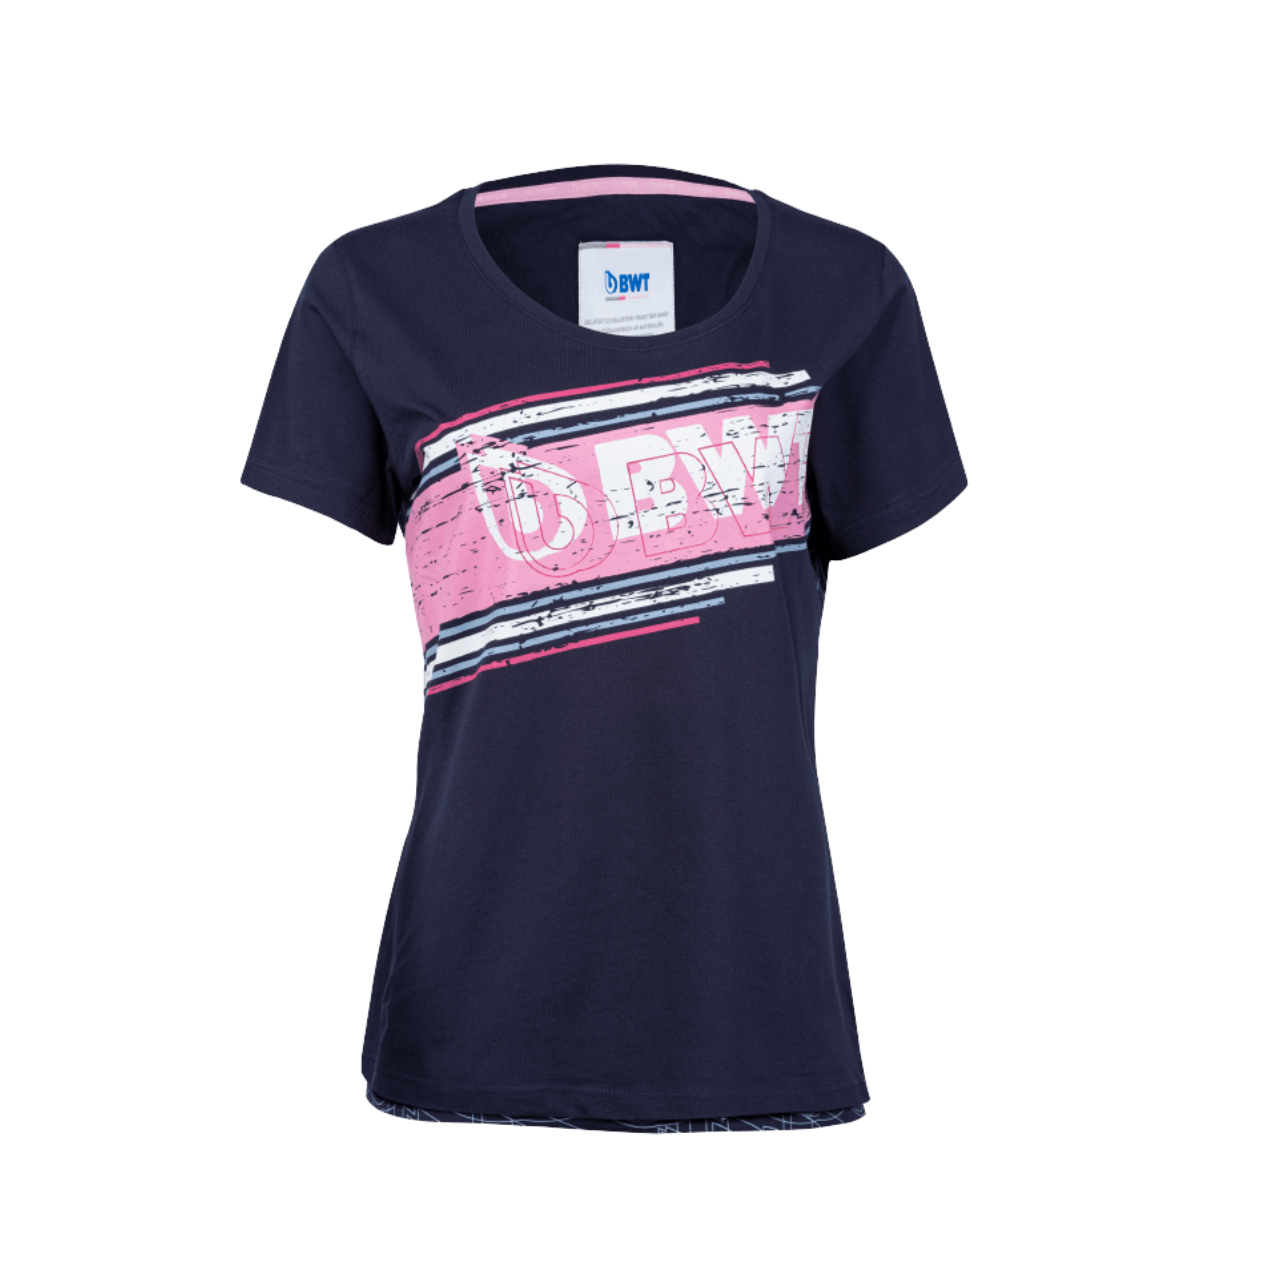 T-shirt BWT Lifestyle Damend bleu avec impression rose et logo BWT blanc sur la poitrine